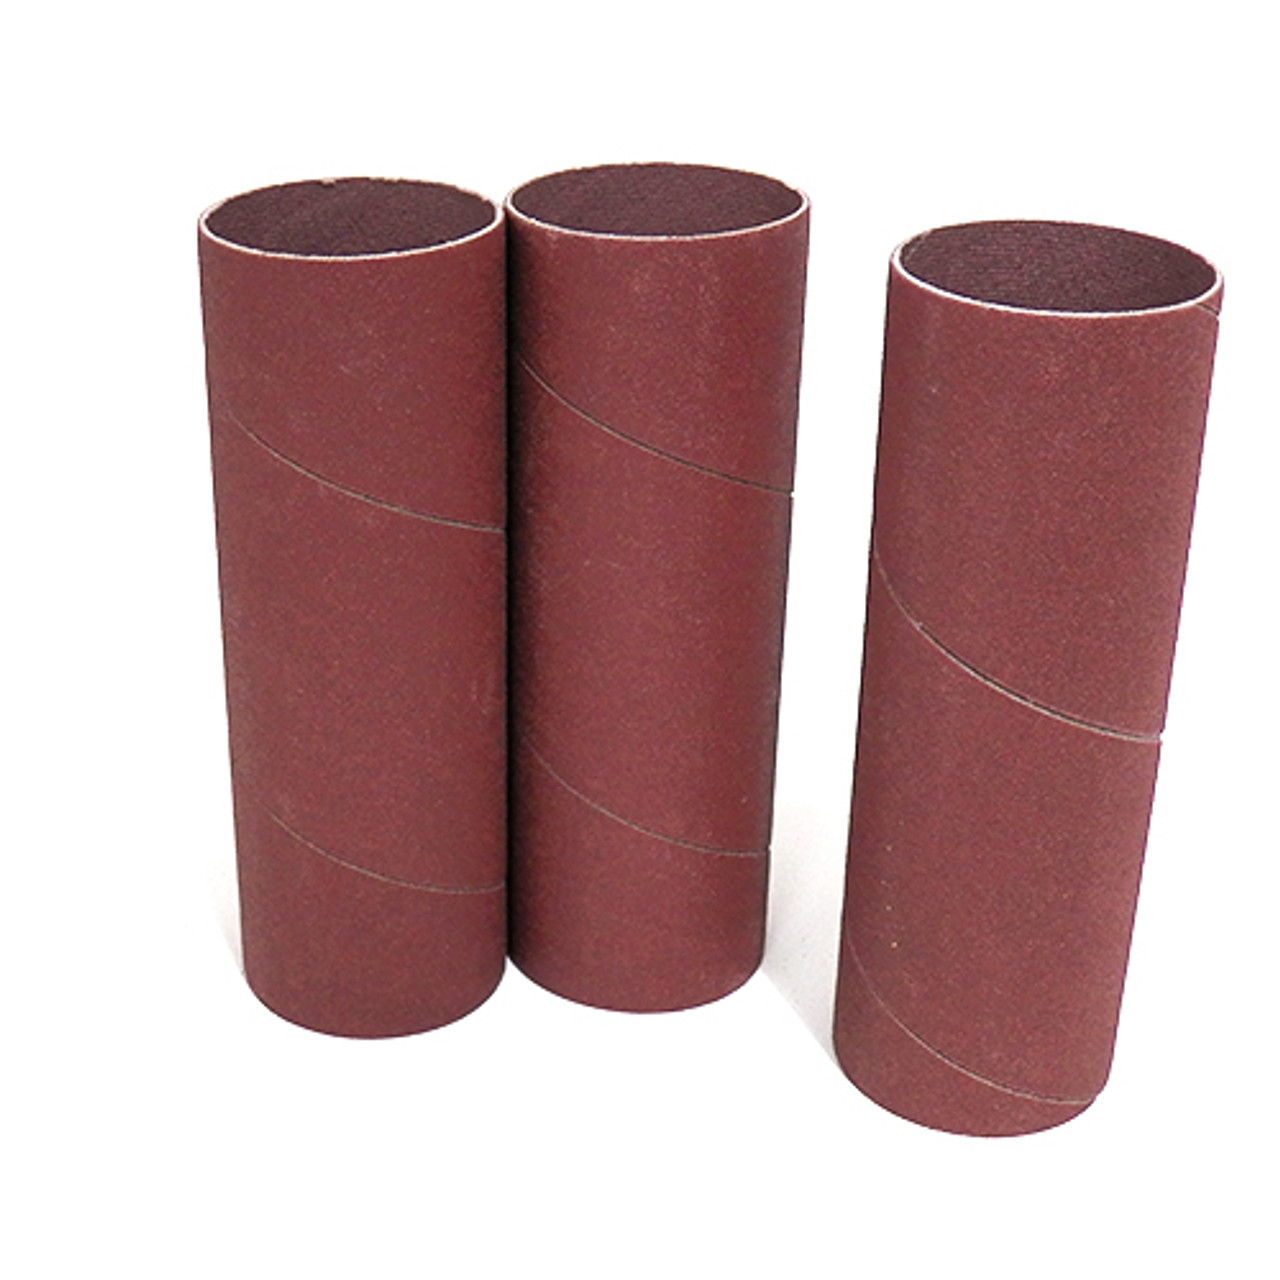 Klingspor Abrasives Aluminum Oxide Sanding Sleeves, 1-1/2"X 4-1/2" 150 Grit, 3pk